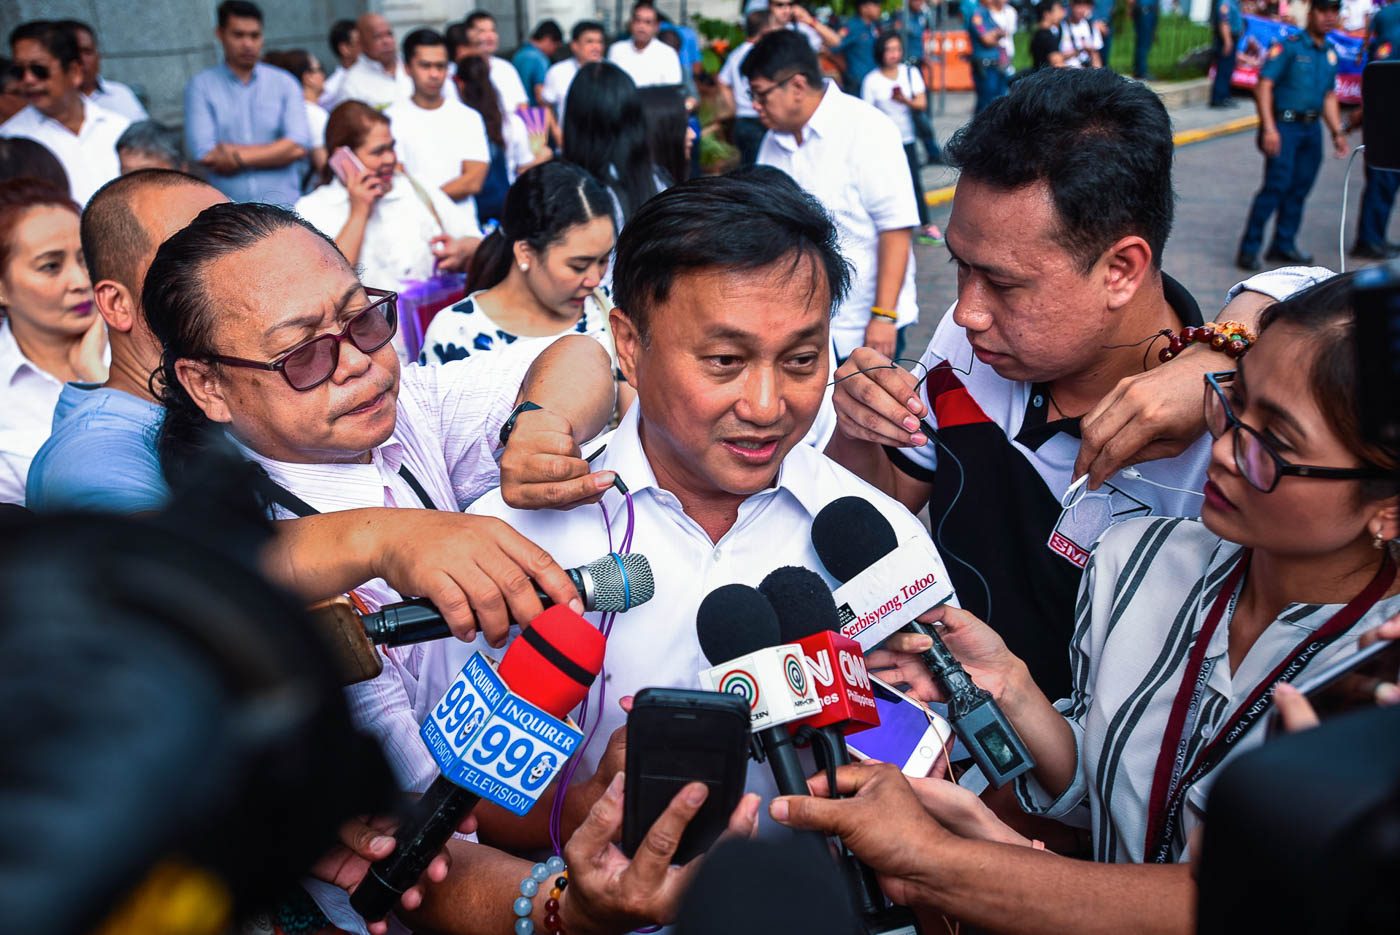 Tolentino bids for Senate anew, sets aside protest vs De Lima